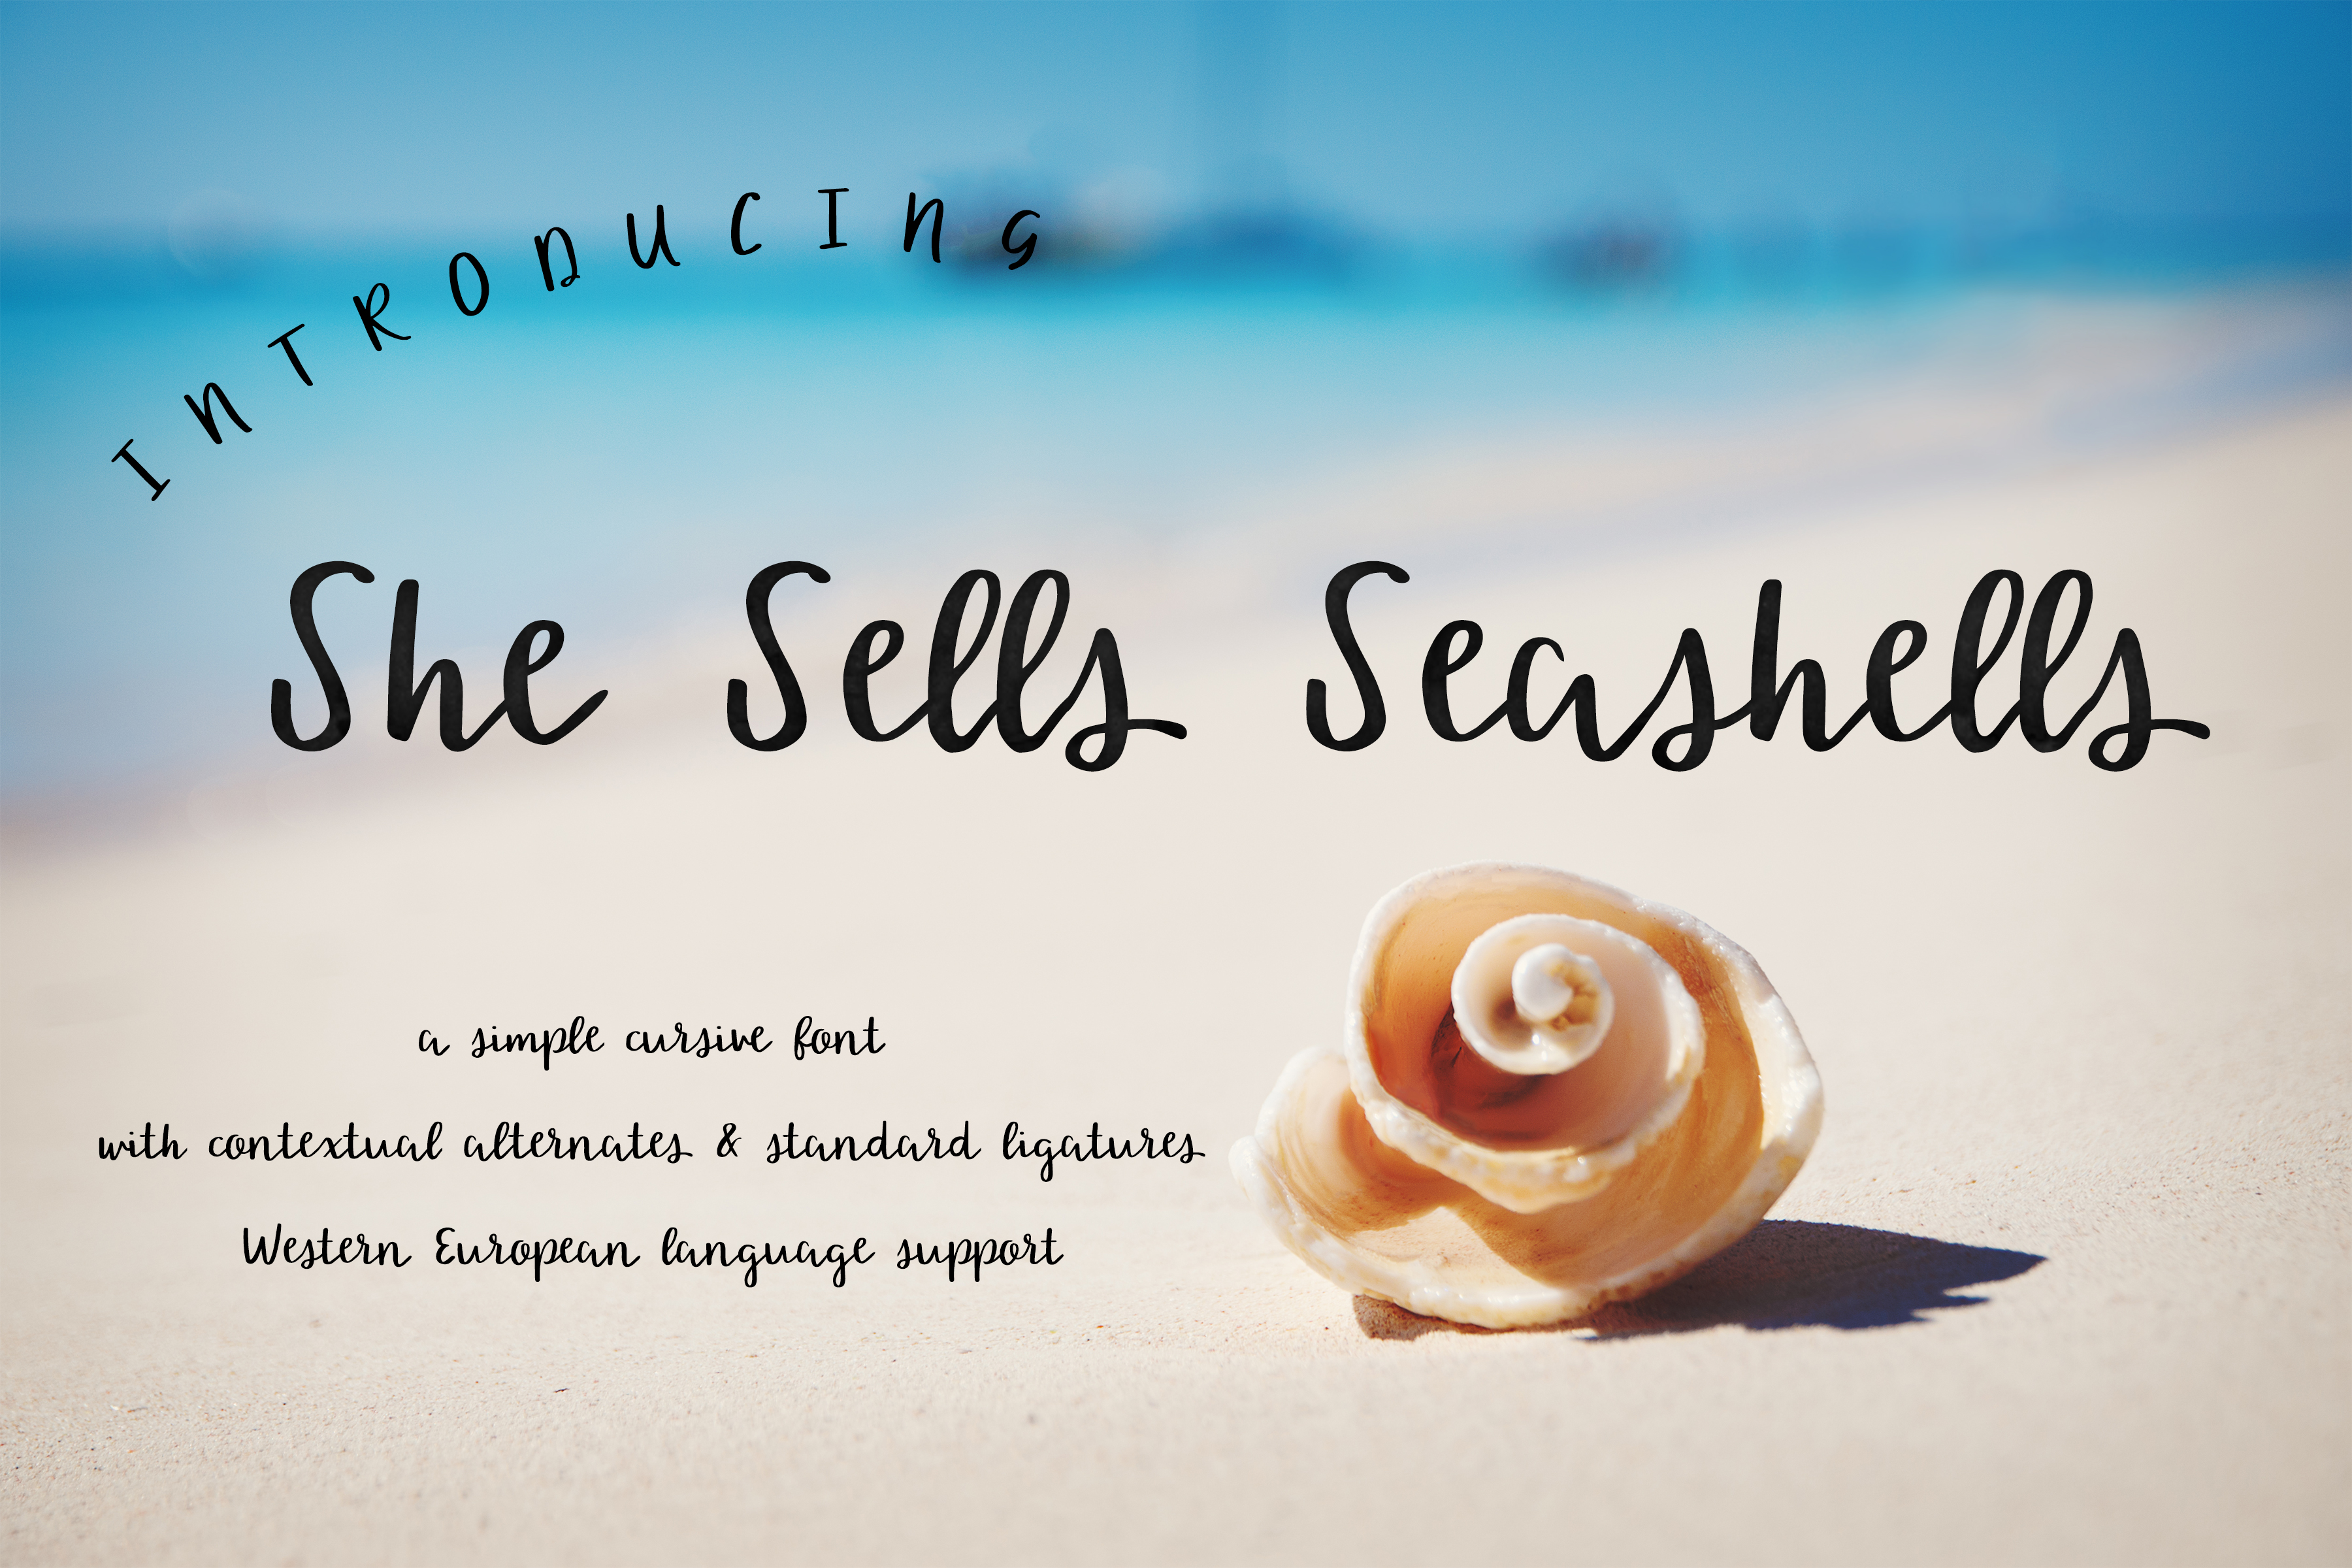 She sells seashells rap